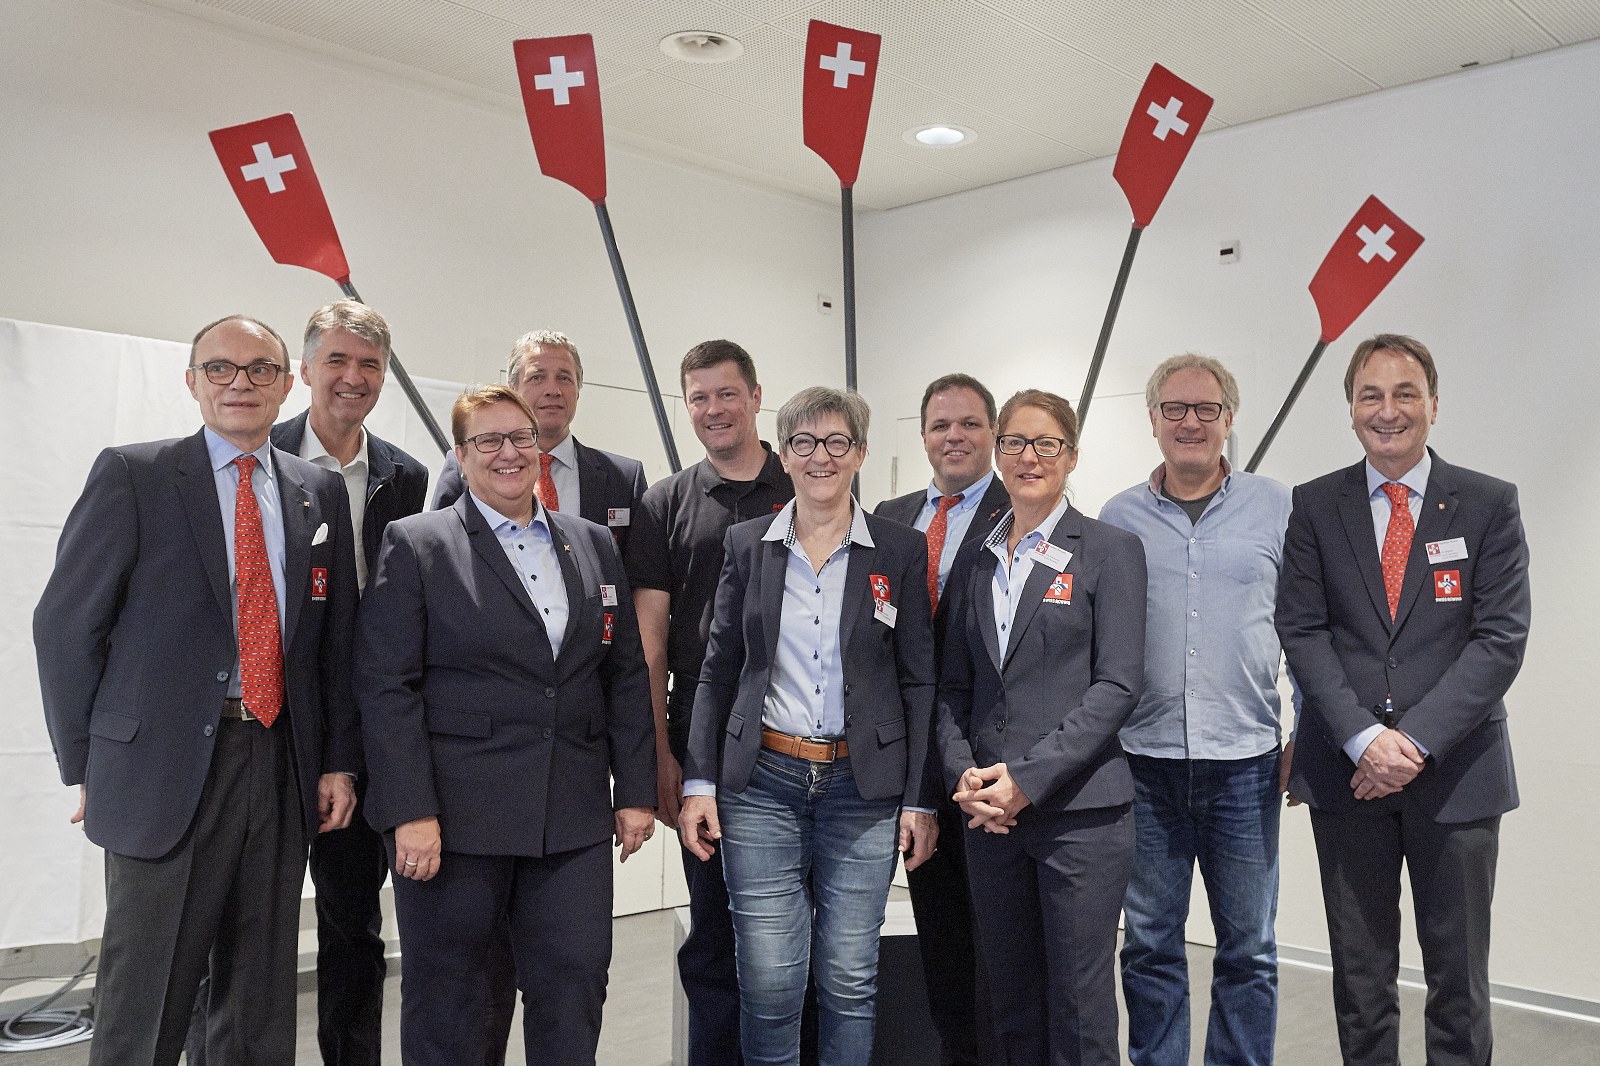 Gruppenbild mit Bern's Stadtpräsident Alec von Graffenried